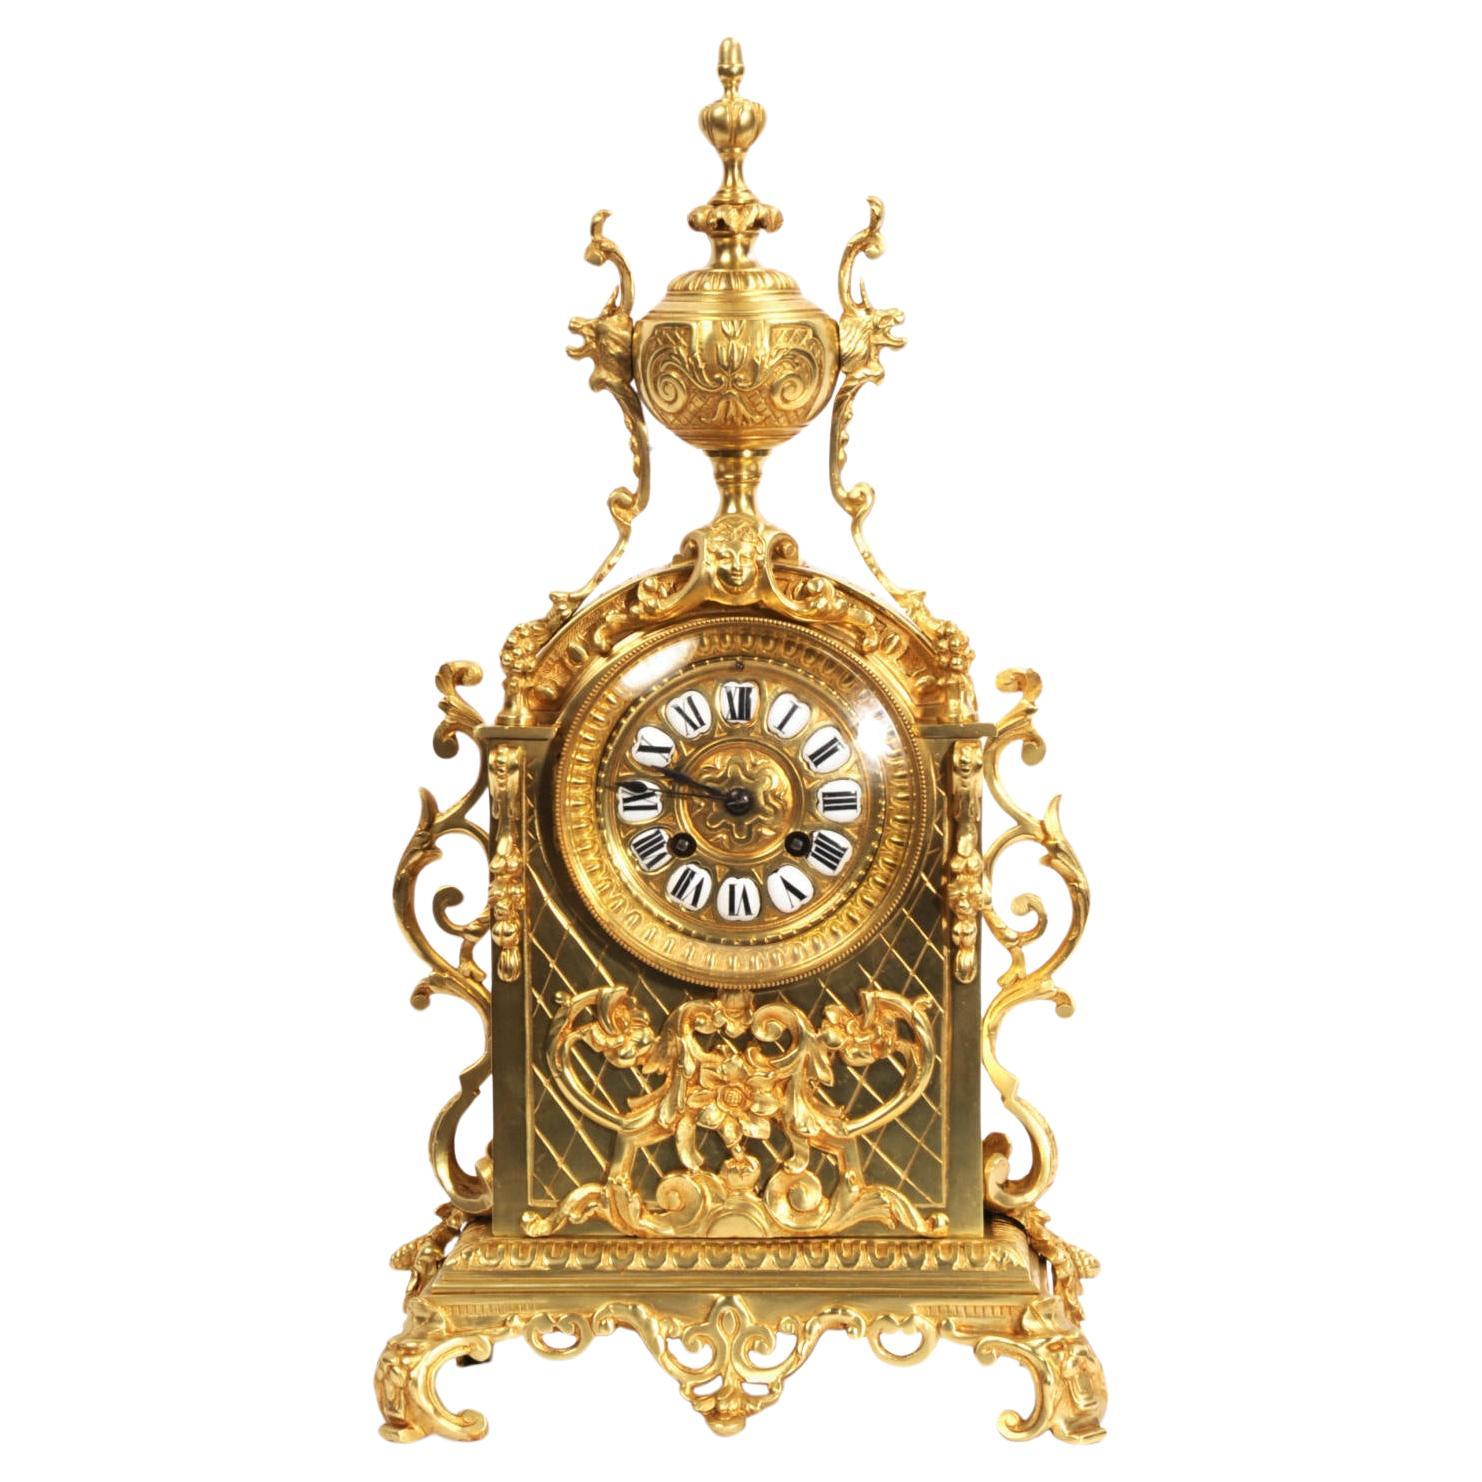 Antique French Reloj Barroco de Bronce Dorado